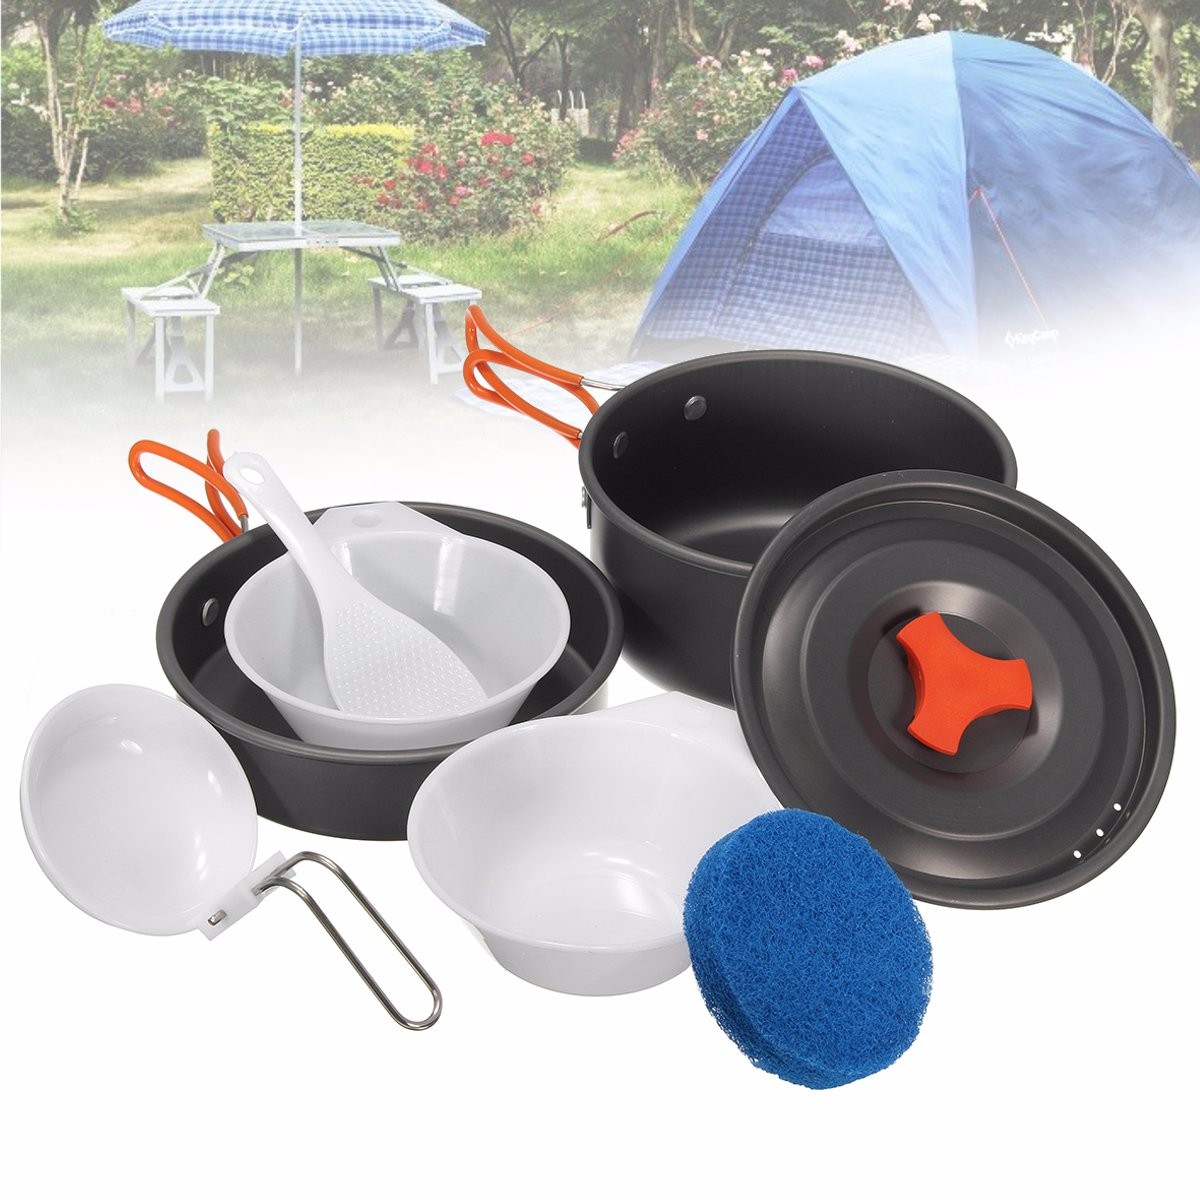 8Pcs-Camping-Aluminum-Pot-Bowl-Portable-Outdoor-Picnic-Cooking-Pan-Set-Cookware-1116210-1